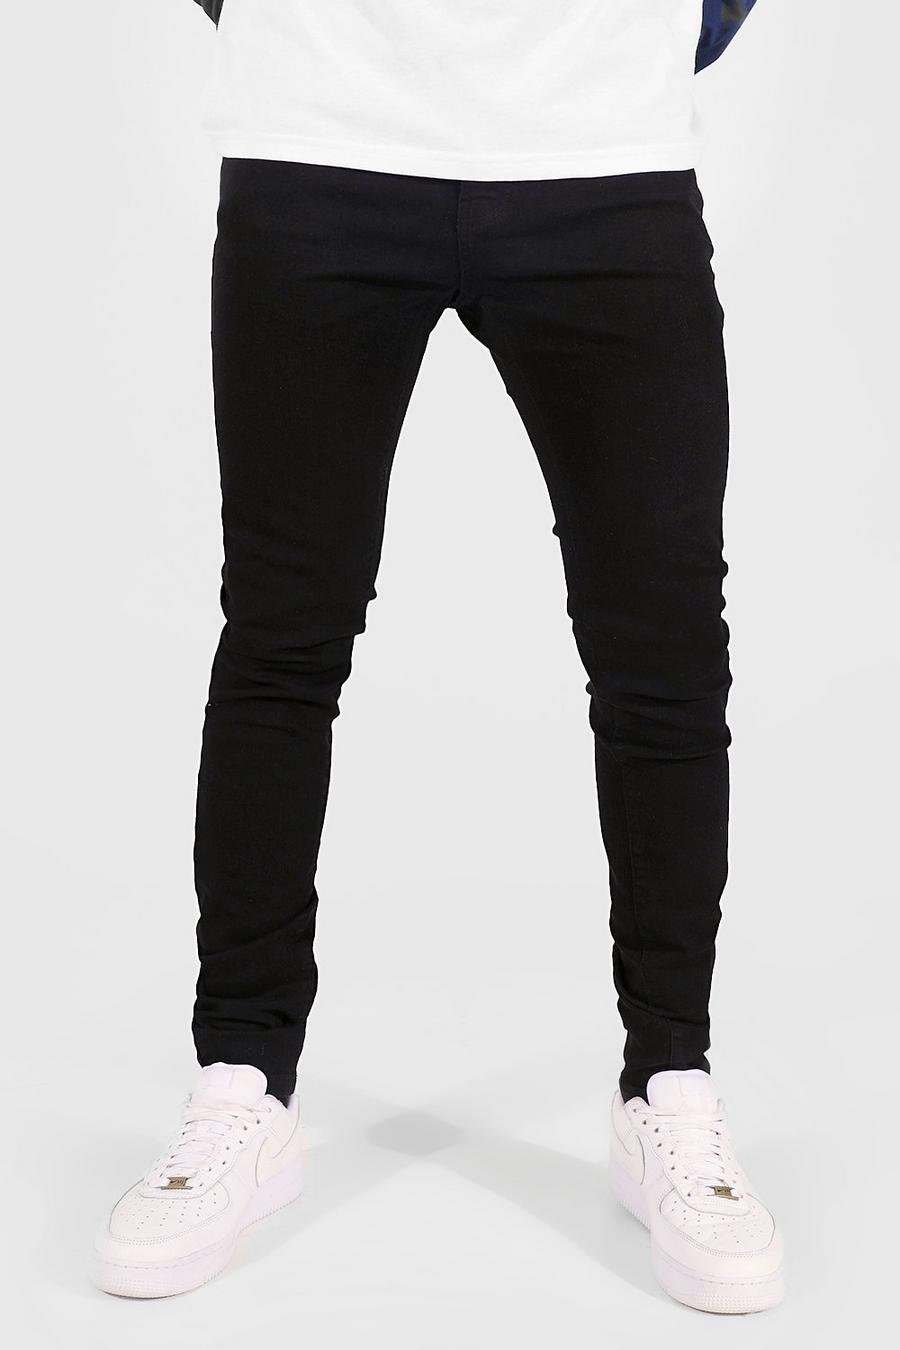 שחור סקיני ג'ינס לנשים גבוהות image number 1